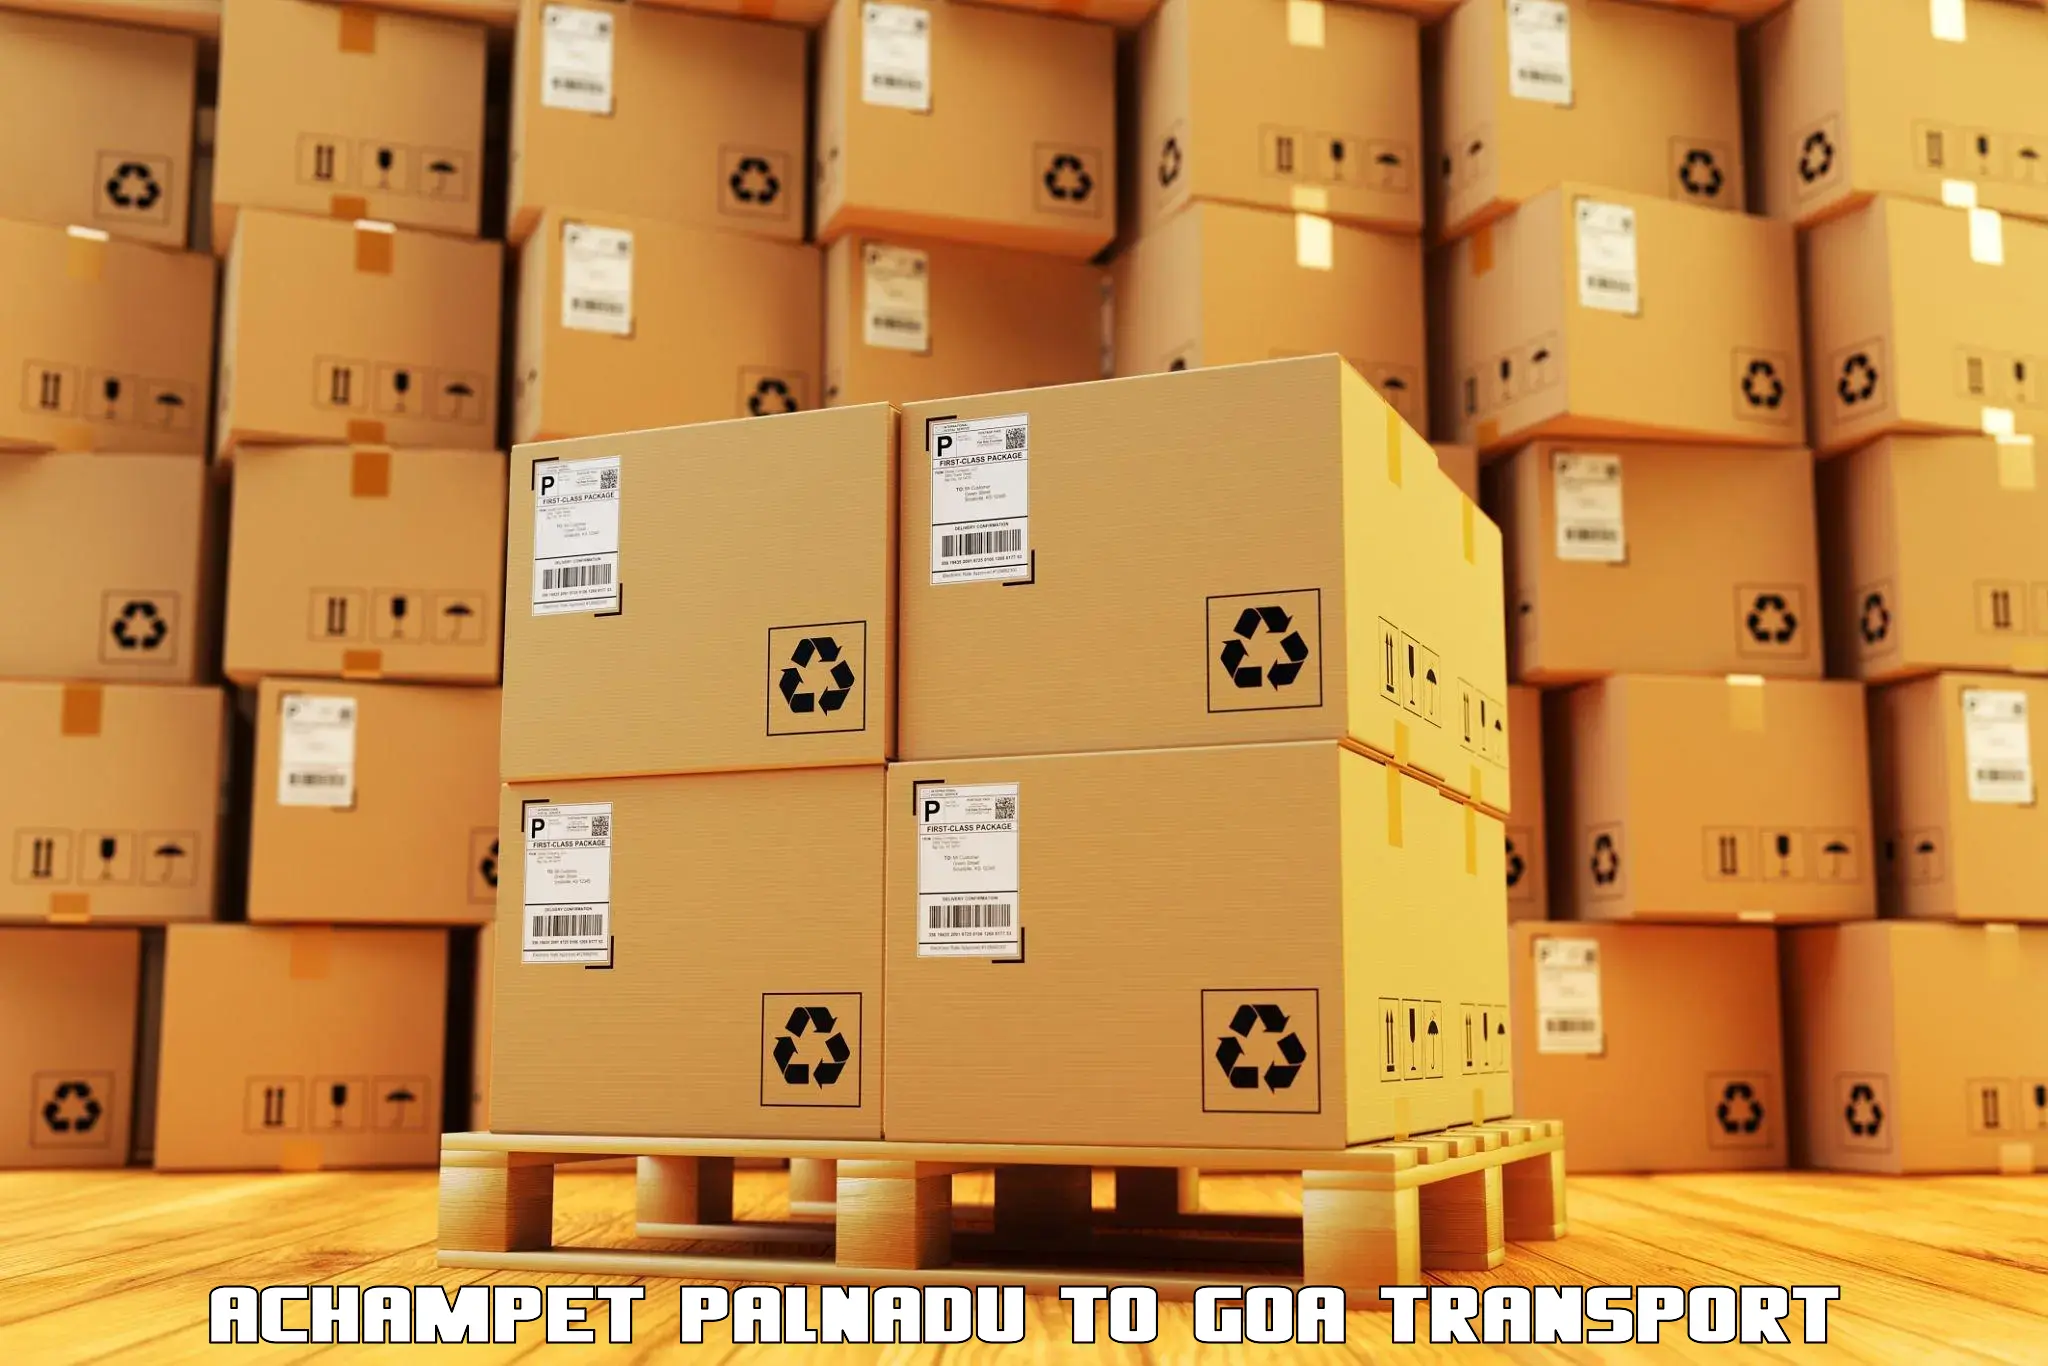 Furniture transport service Achampet Palnadu to Vasco da Gama